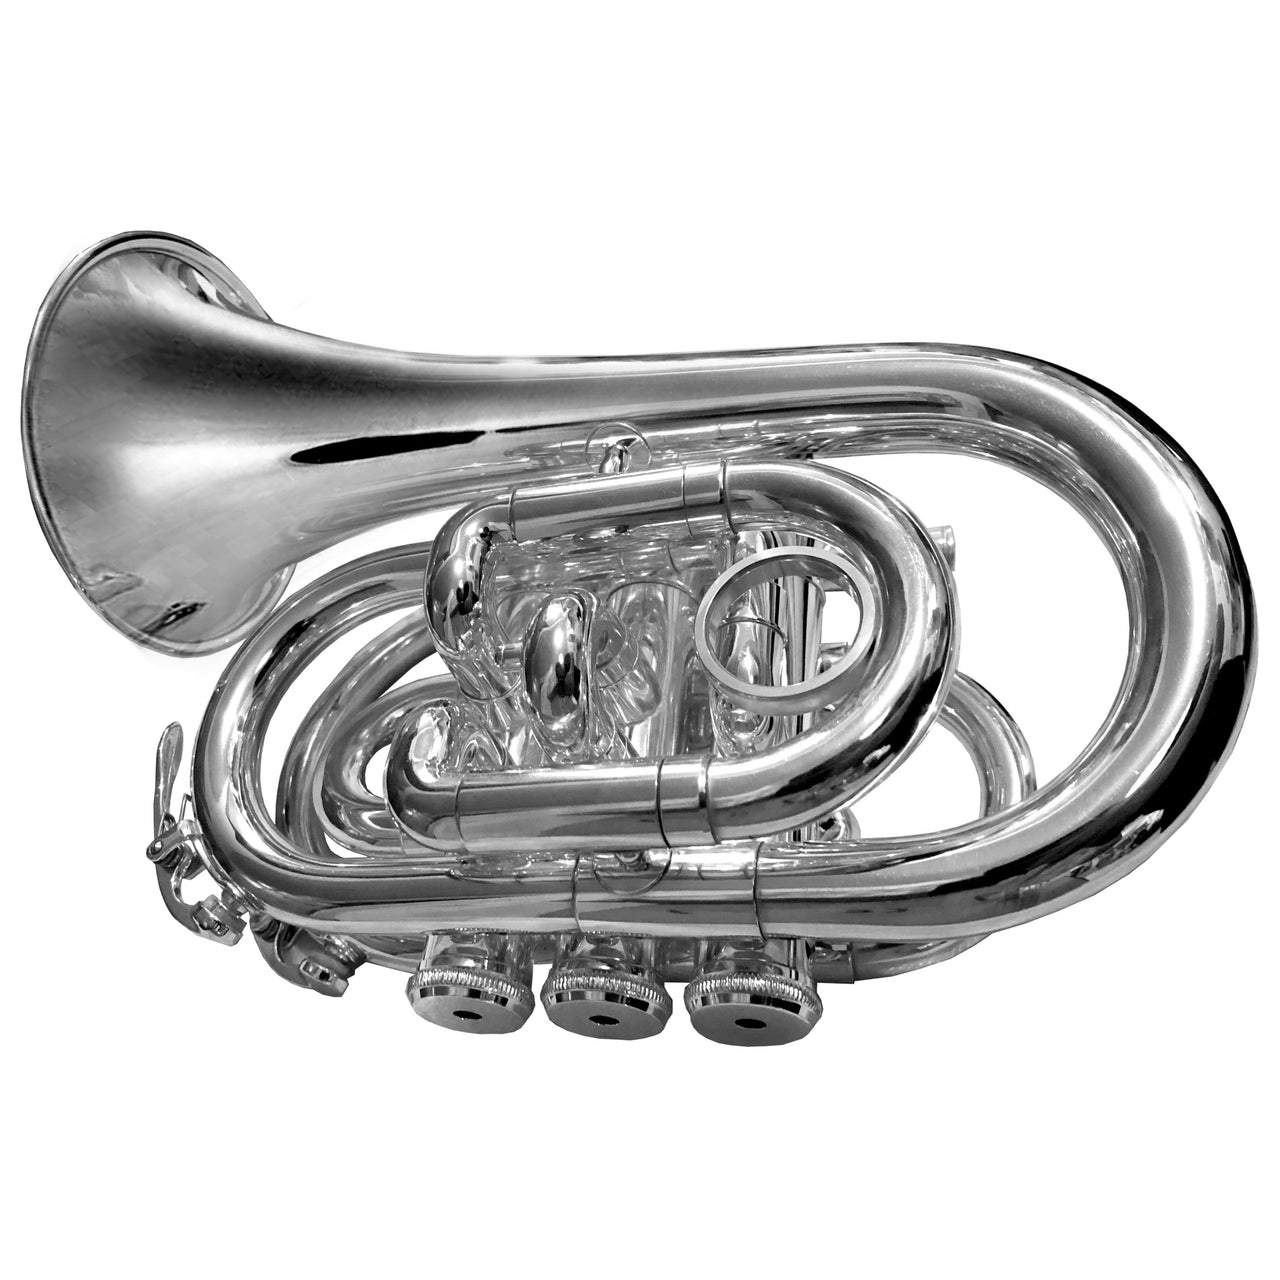 Trompeta Fanpro Treh11 Pocket Sib Plateada